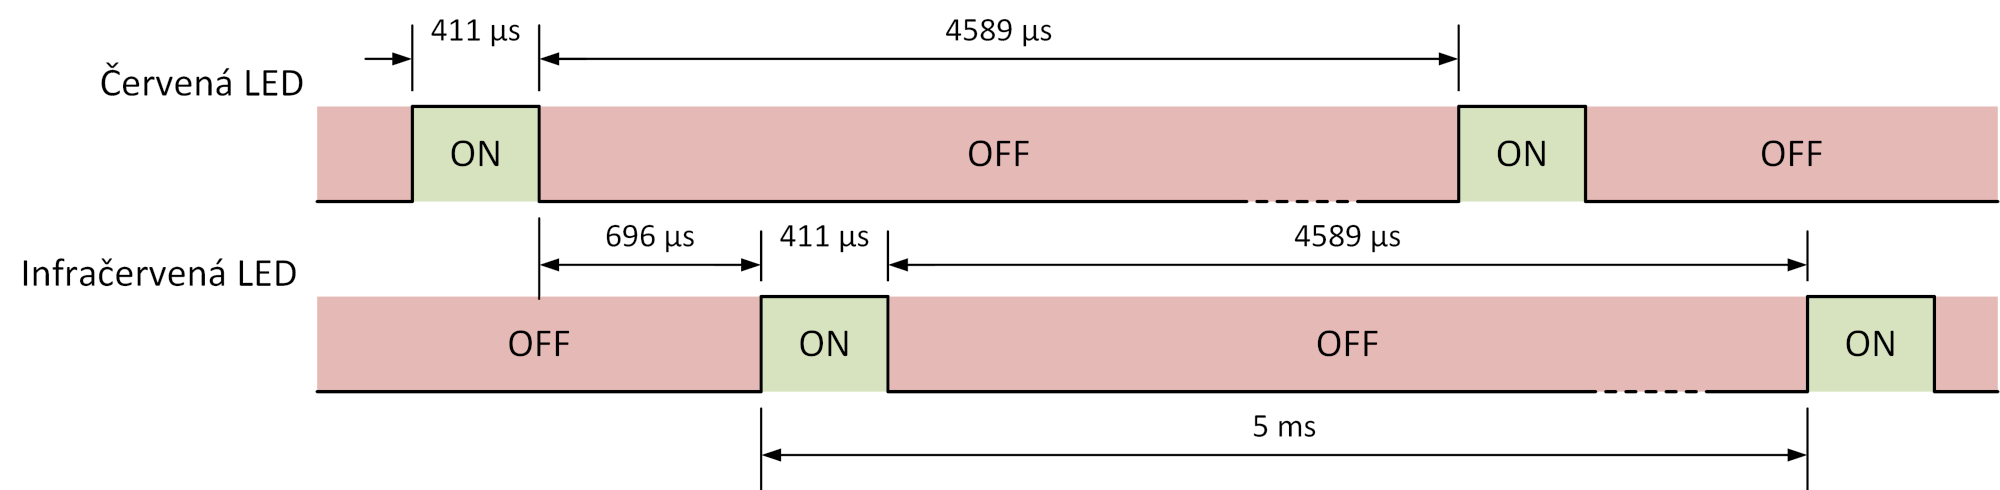 Obr. 6   Časovanie kanálov v režime SpO2 so vzorkovacou frekvenciou 200 Hz 
(vzorkovacia perióda 5 ms).